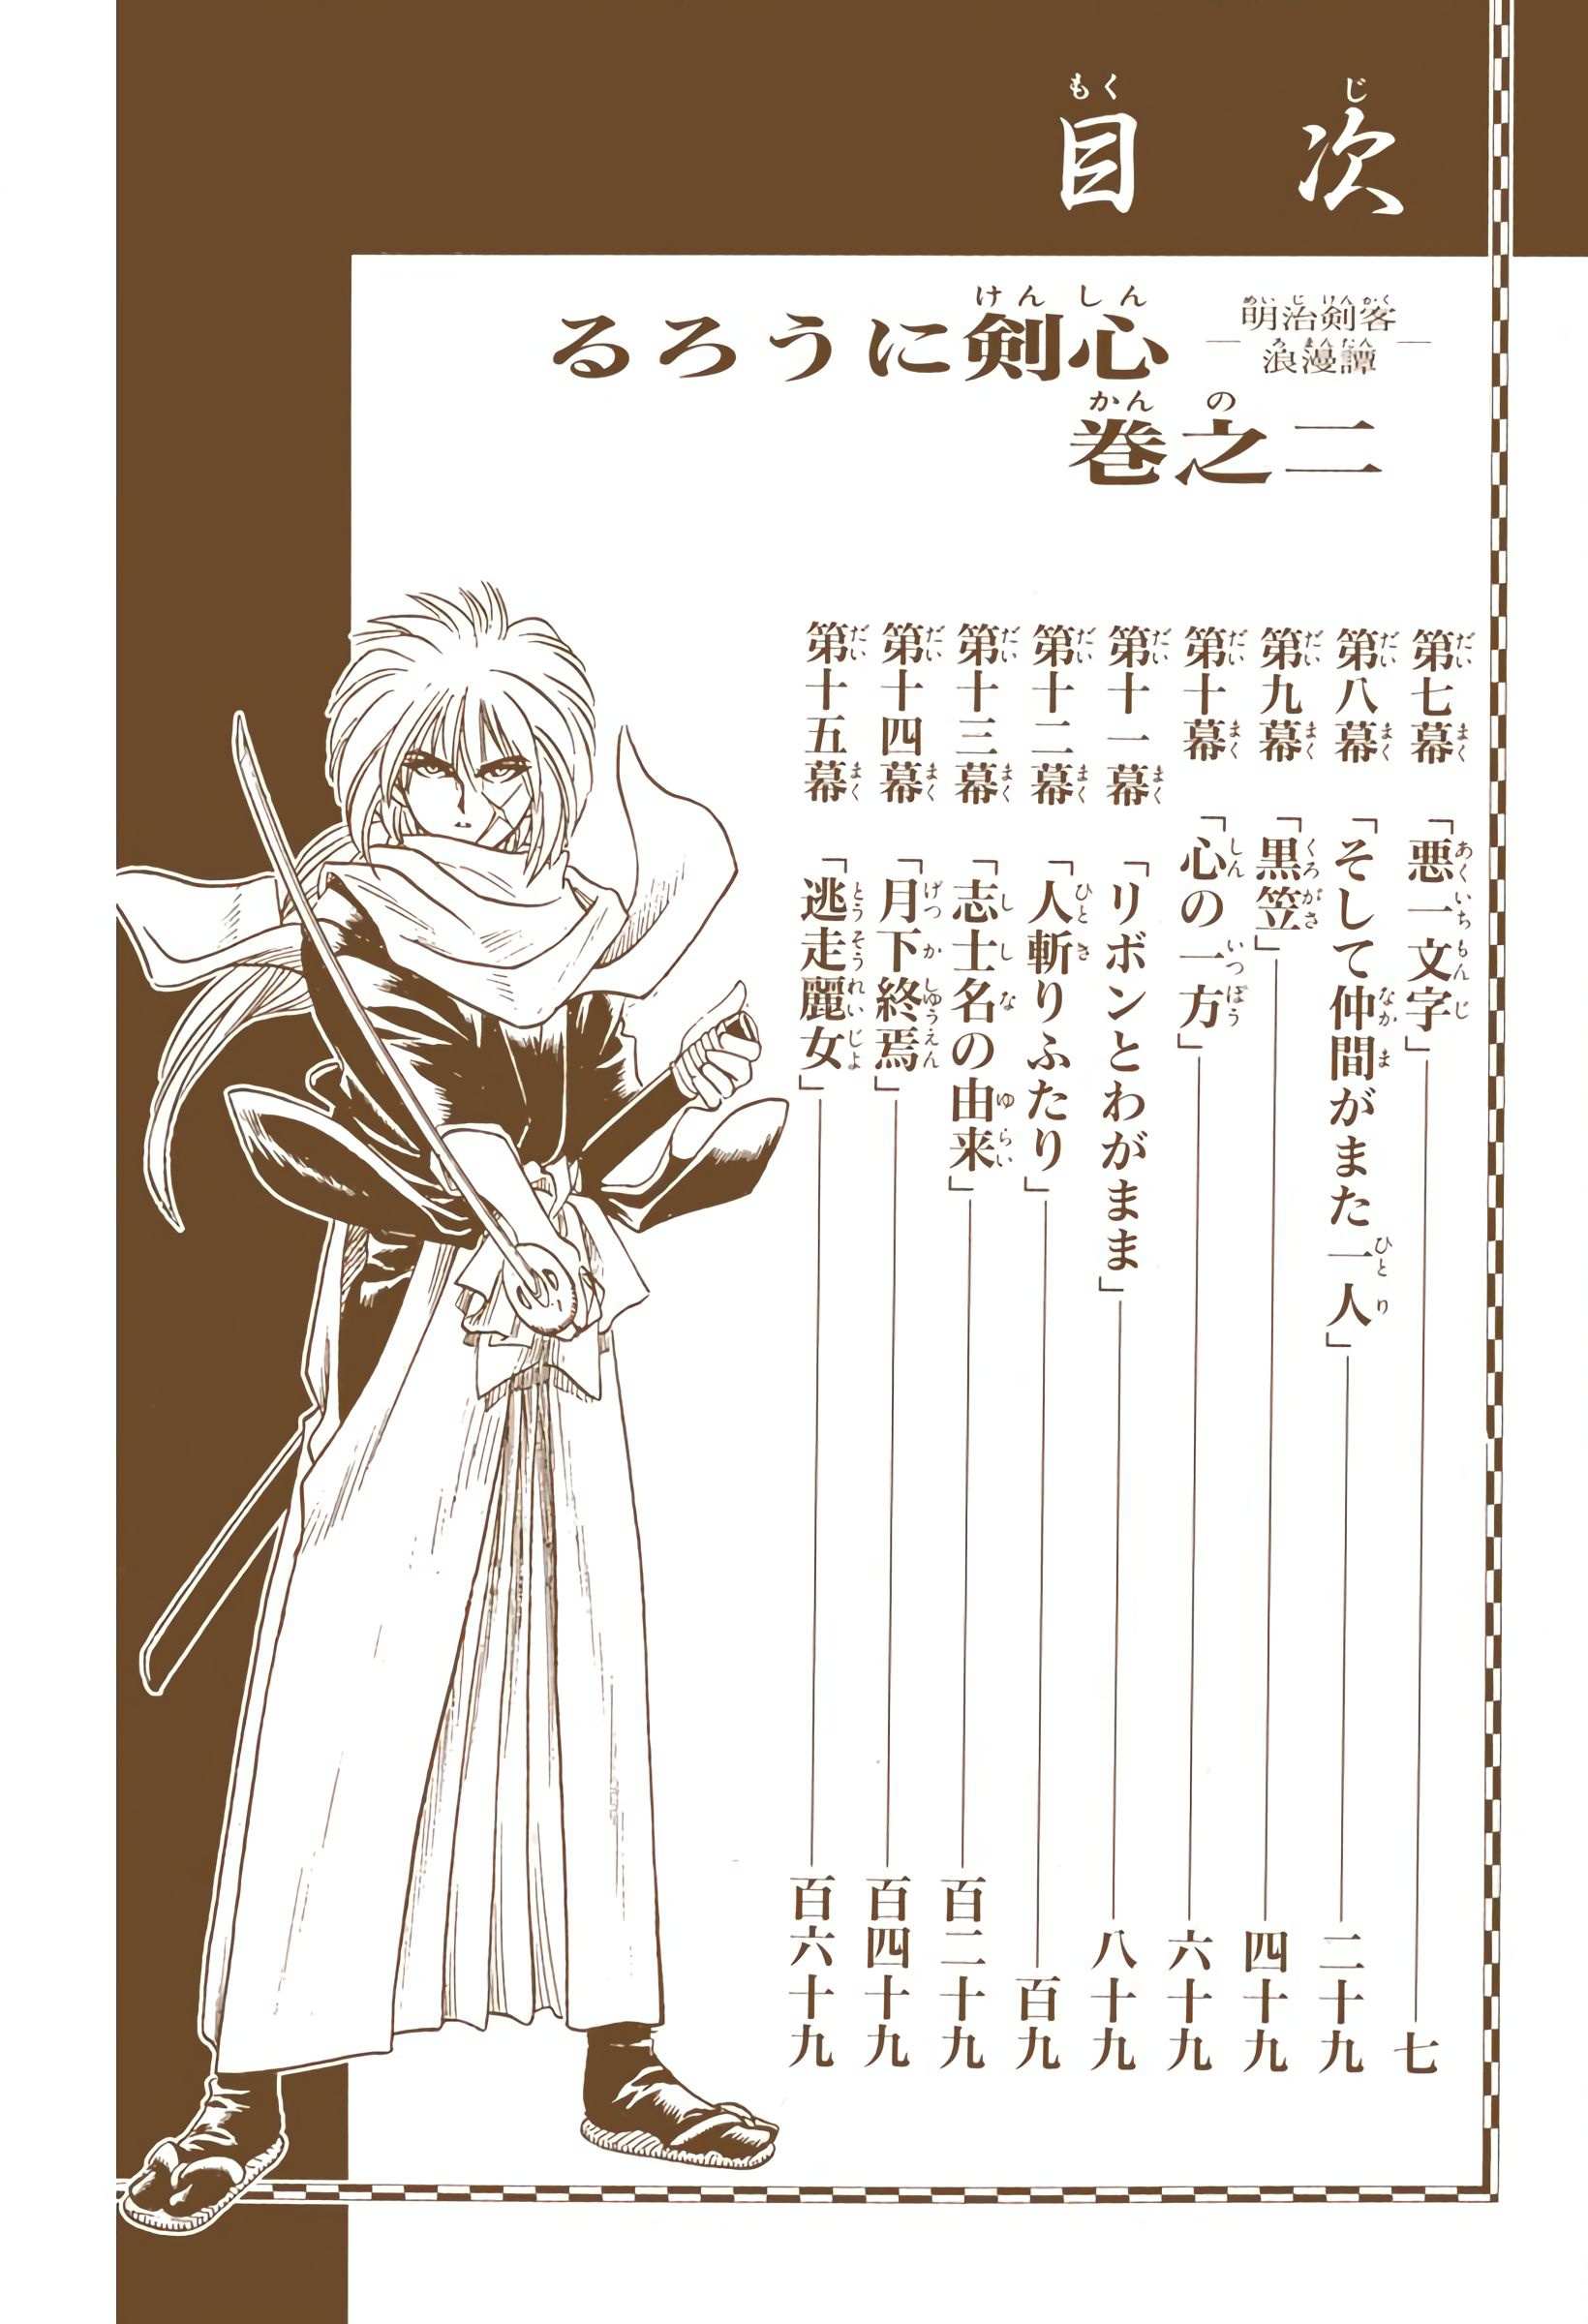 Rurouni Kenshin: Meiji Kenkaku Romantan - Digital Colored - chapter 7 - #6